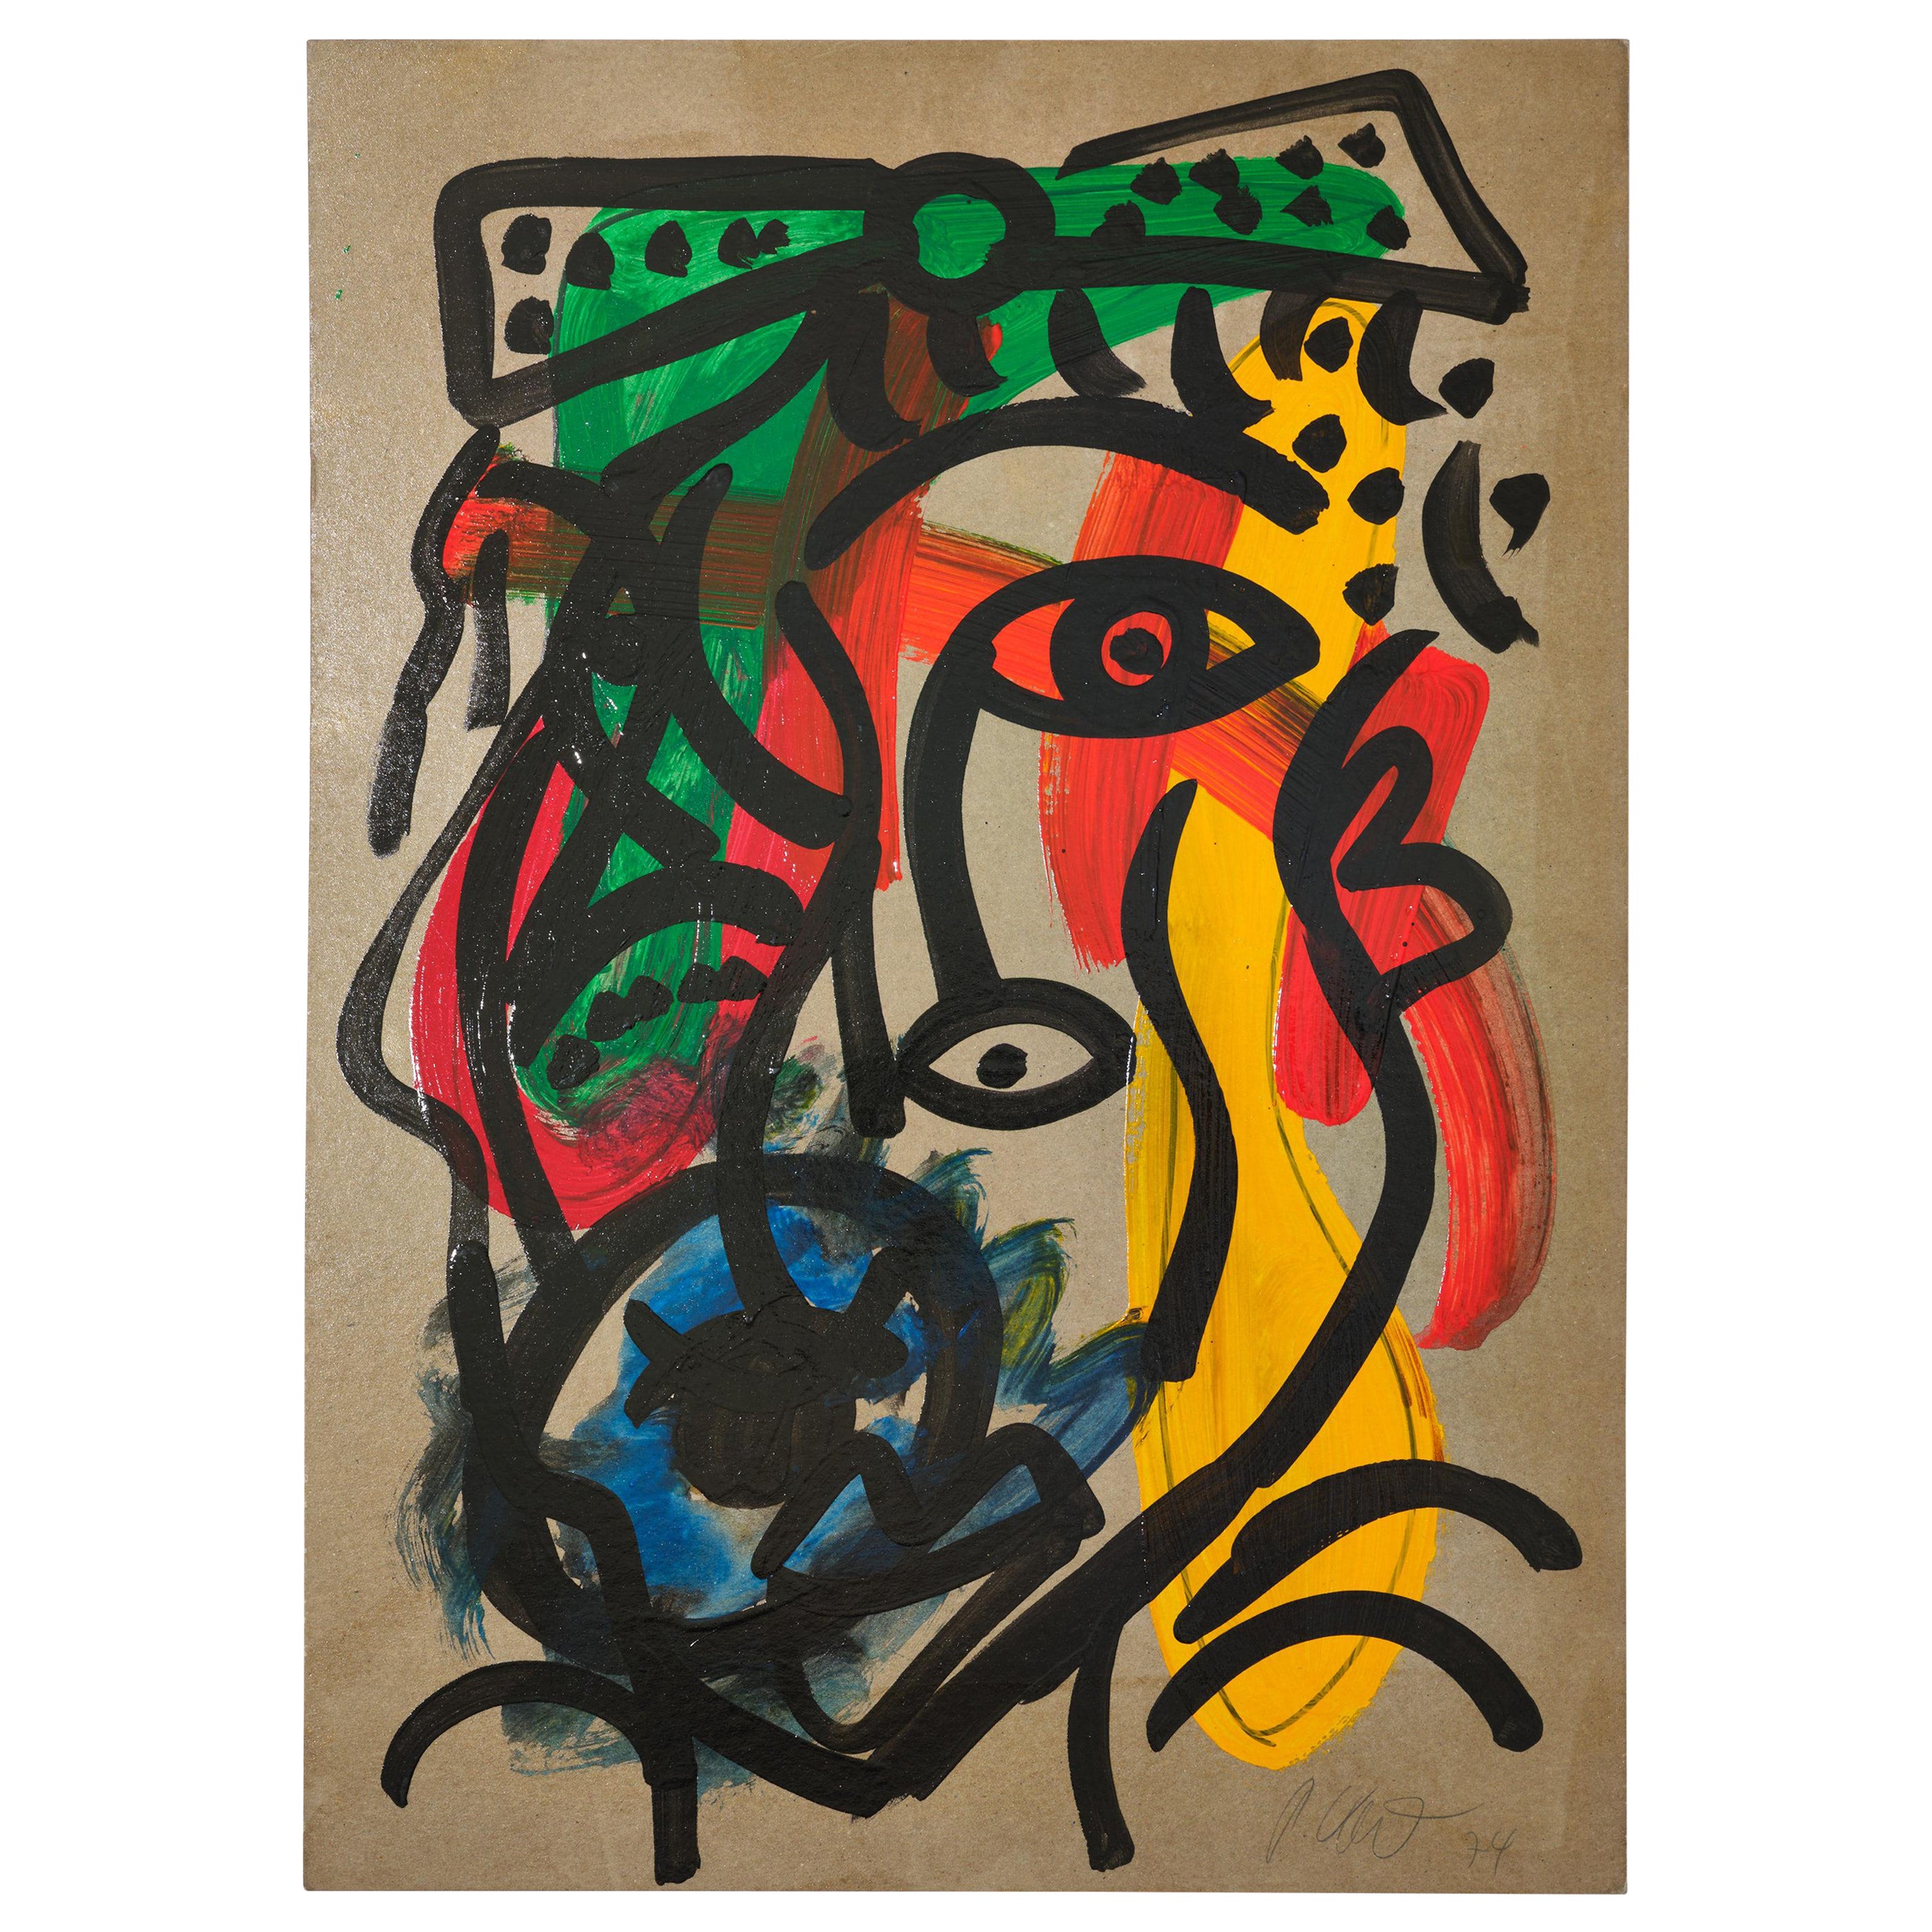 Gemälde von Peter Keil, C 1974, Rot/Blau/Grün/Gelb, Signiert, Acryl auf Papier